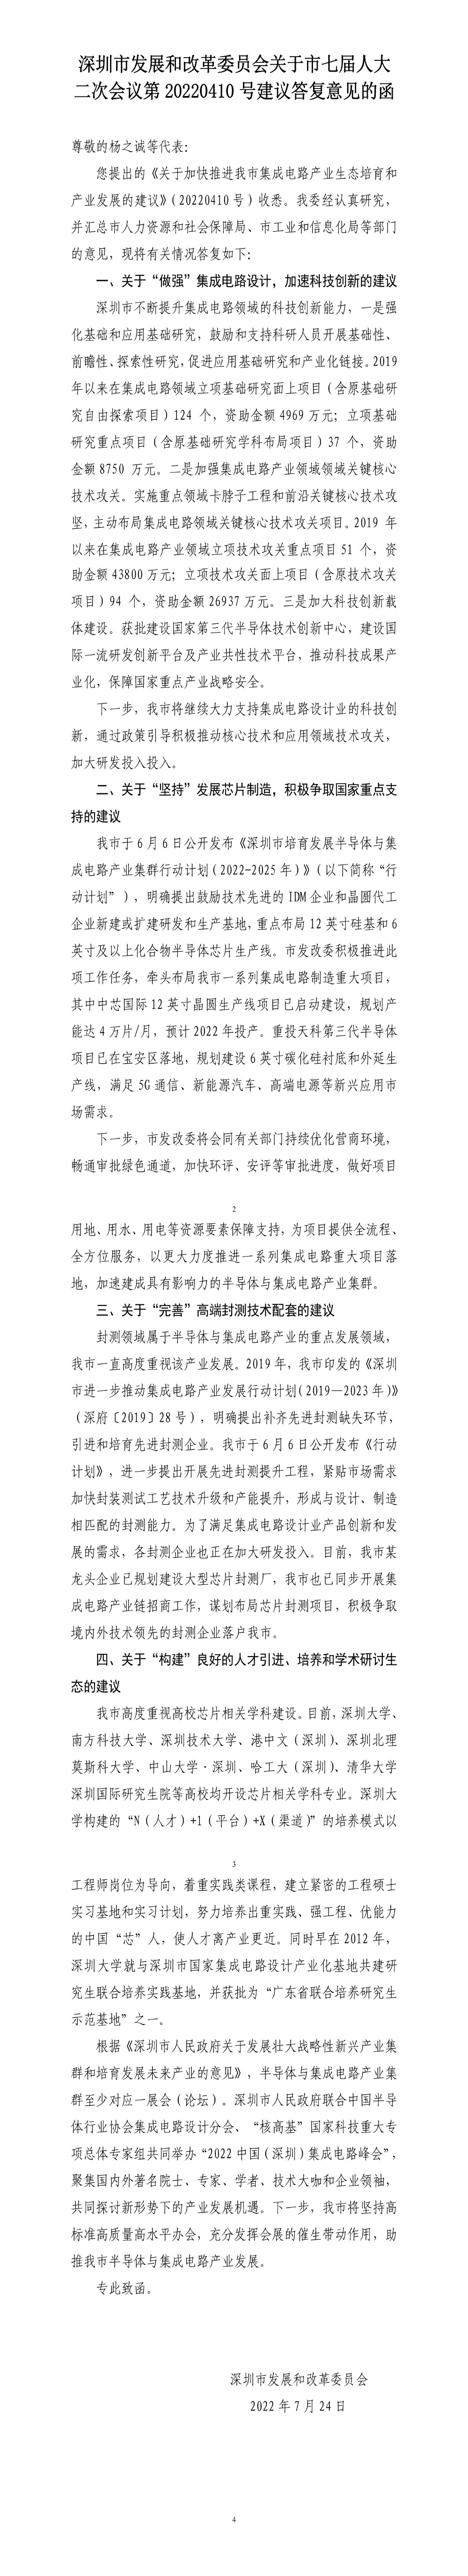 深圳市发展和改革委员会关于市七届人大二次会议第20220410号建议答复意见的函.jpg